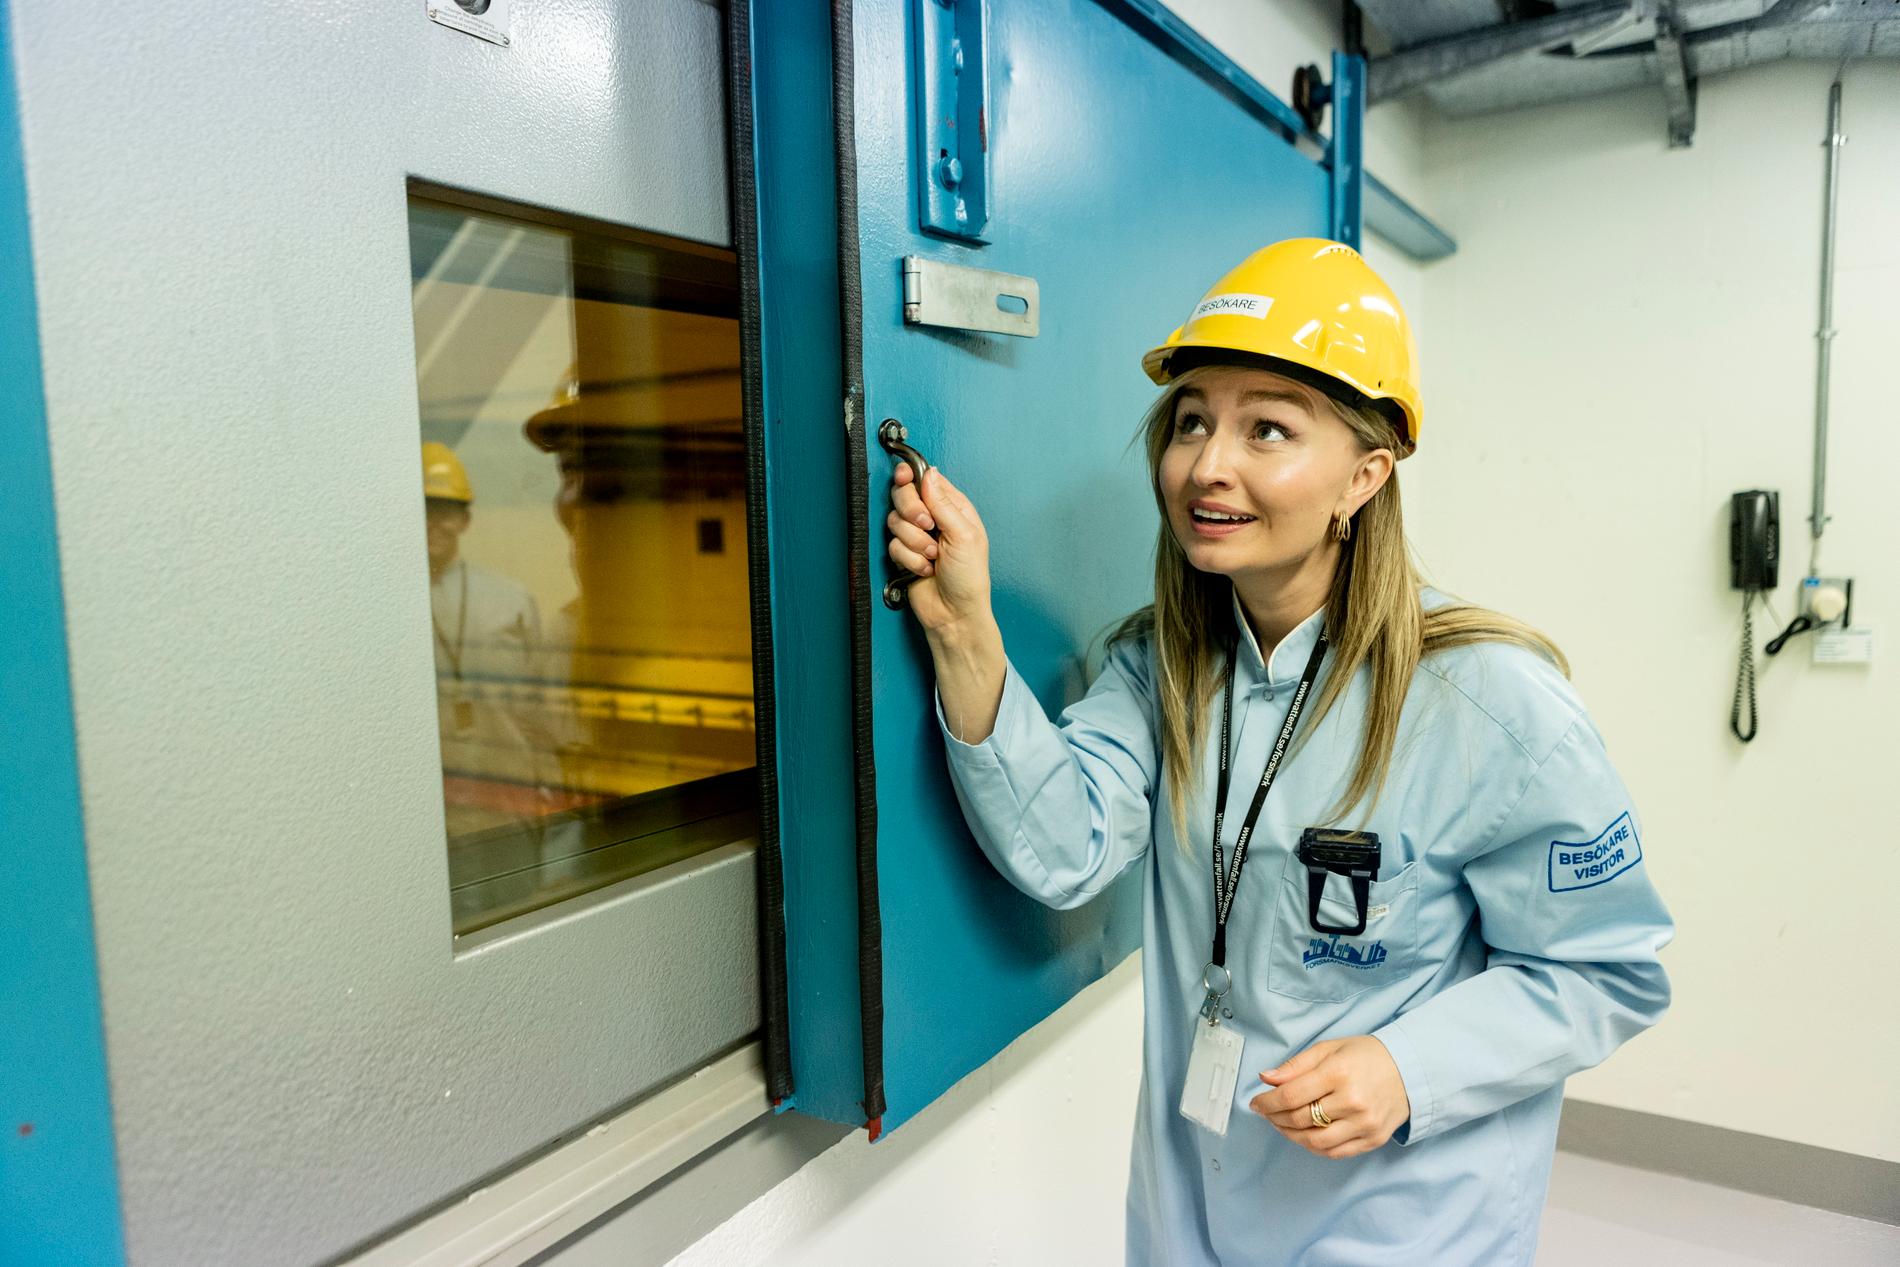 Energi- och näringsminister Ebba Busch (KD) besöker atomreaktorn Forsmark 3. Innanför fönsterluckan ligger turbinhallen.